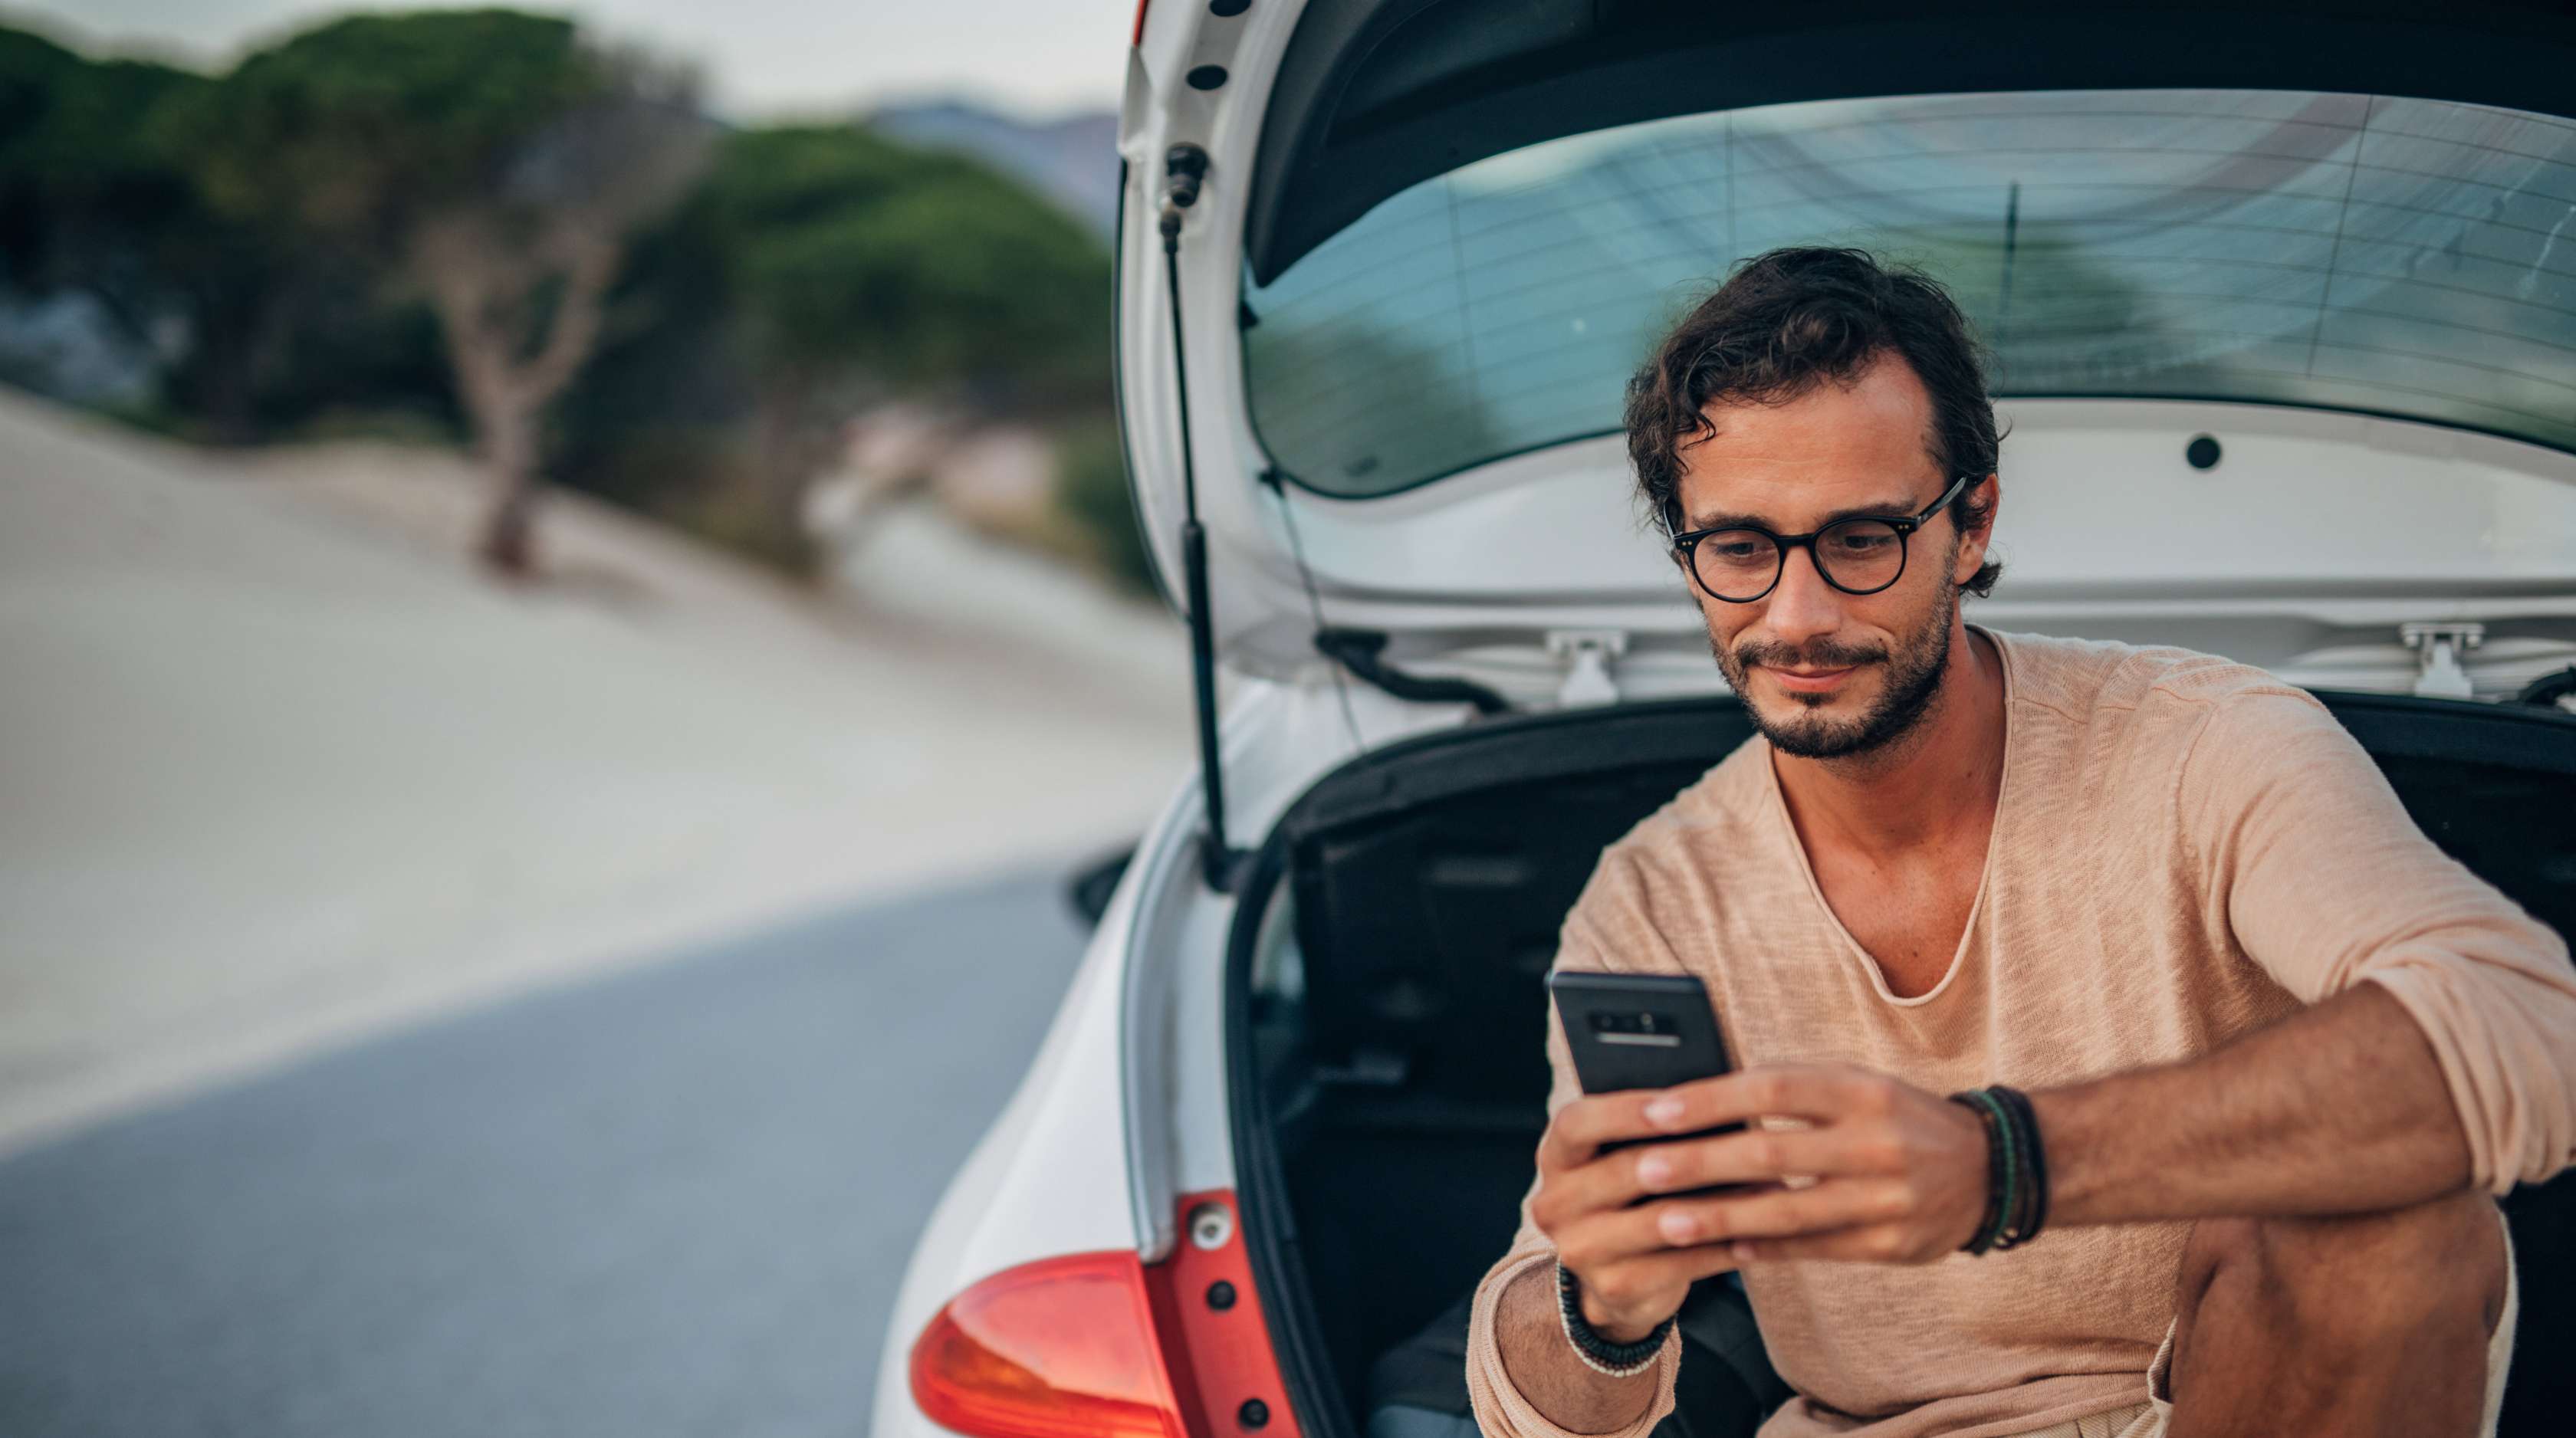 Mann mit Brille und Bart sitzt im Kofferraum seines Autos und schaut ins Smartphone